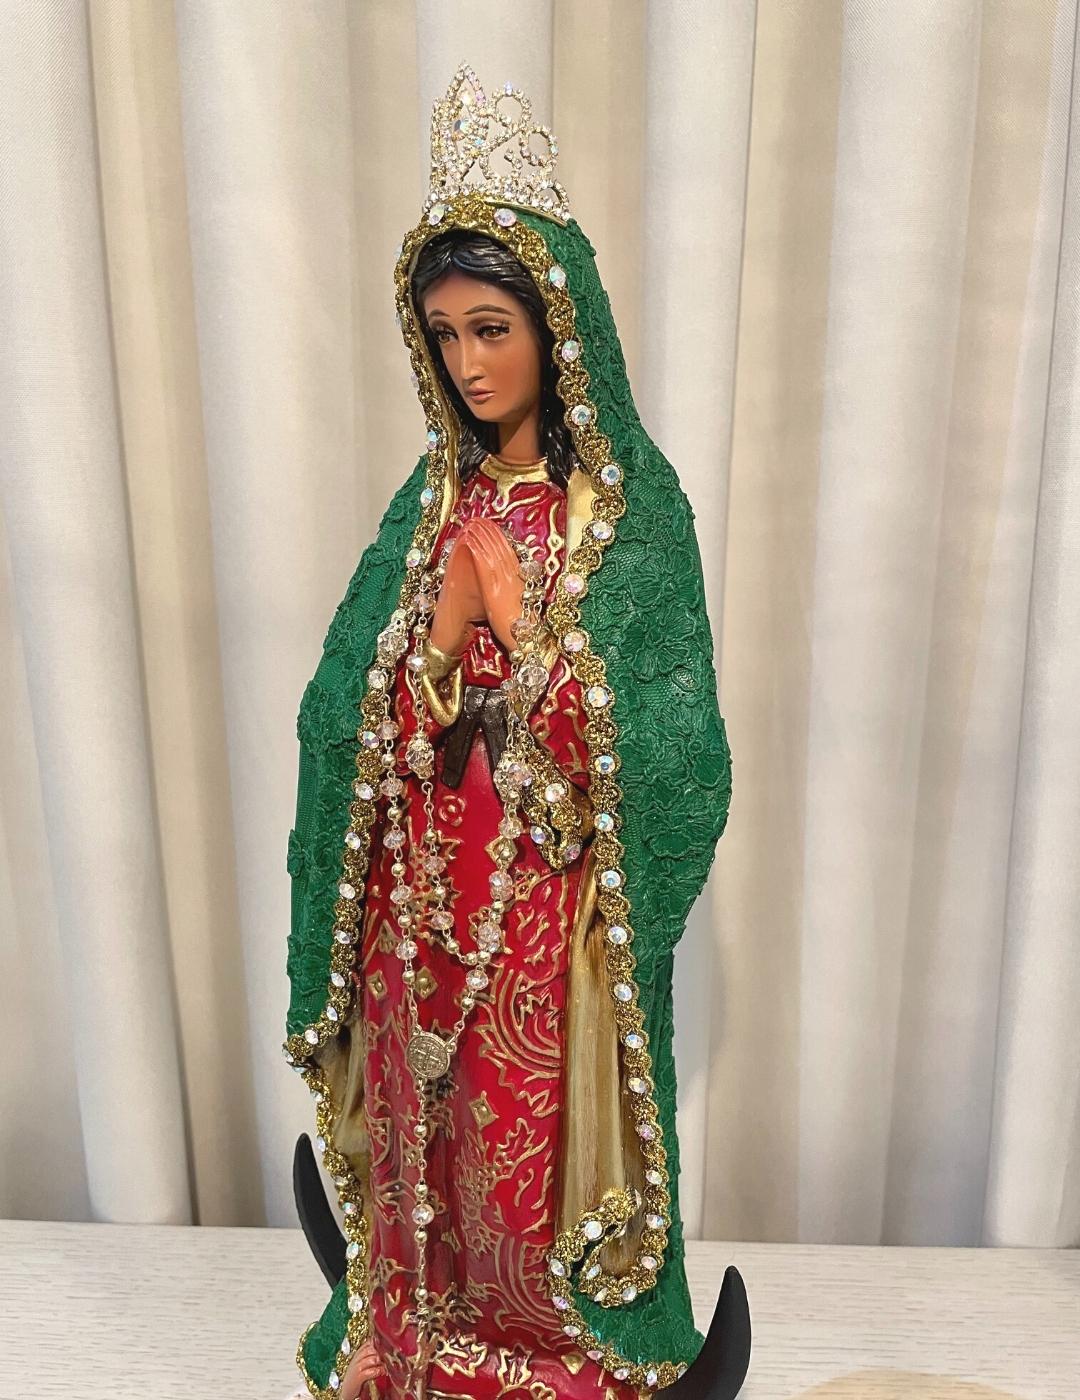 Virgen de Guadalupe 50 cm